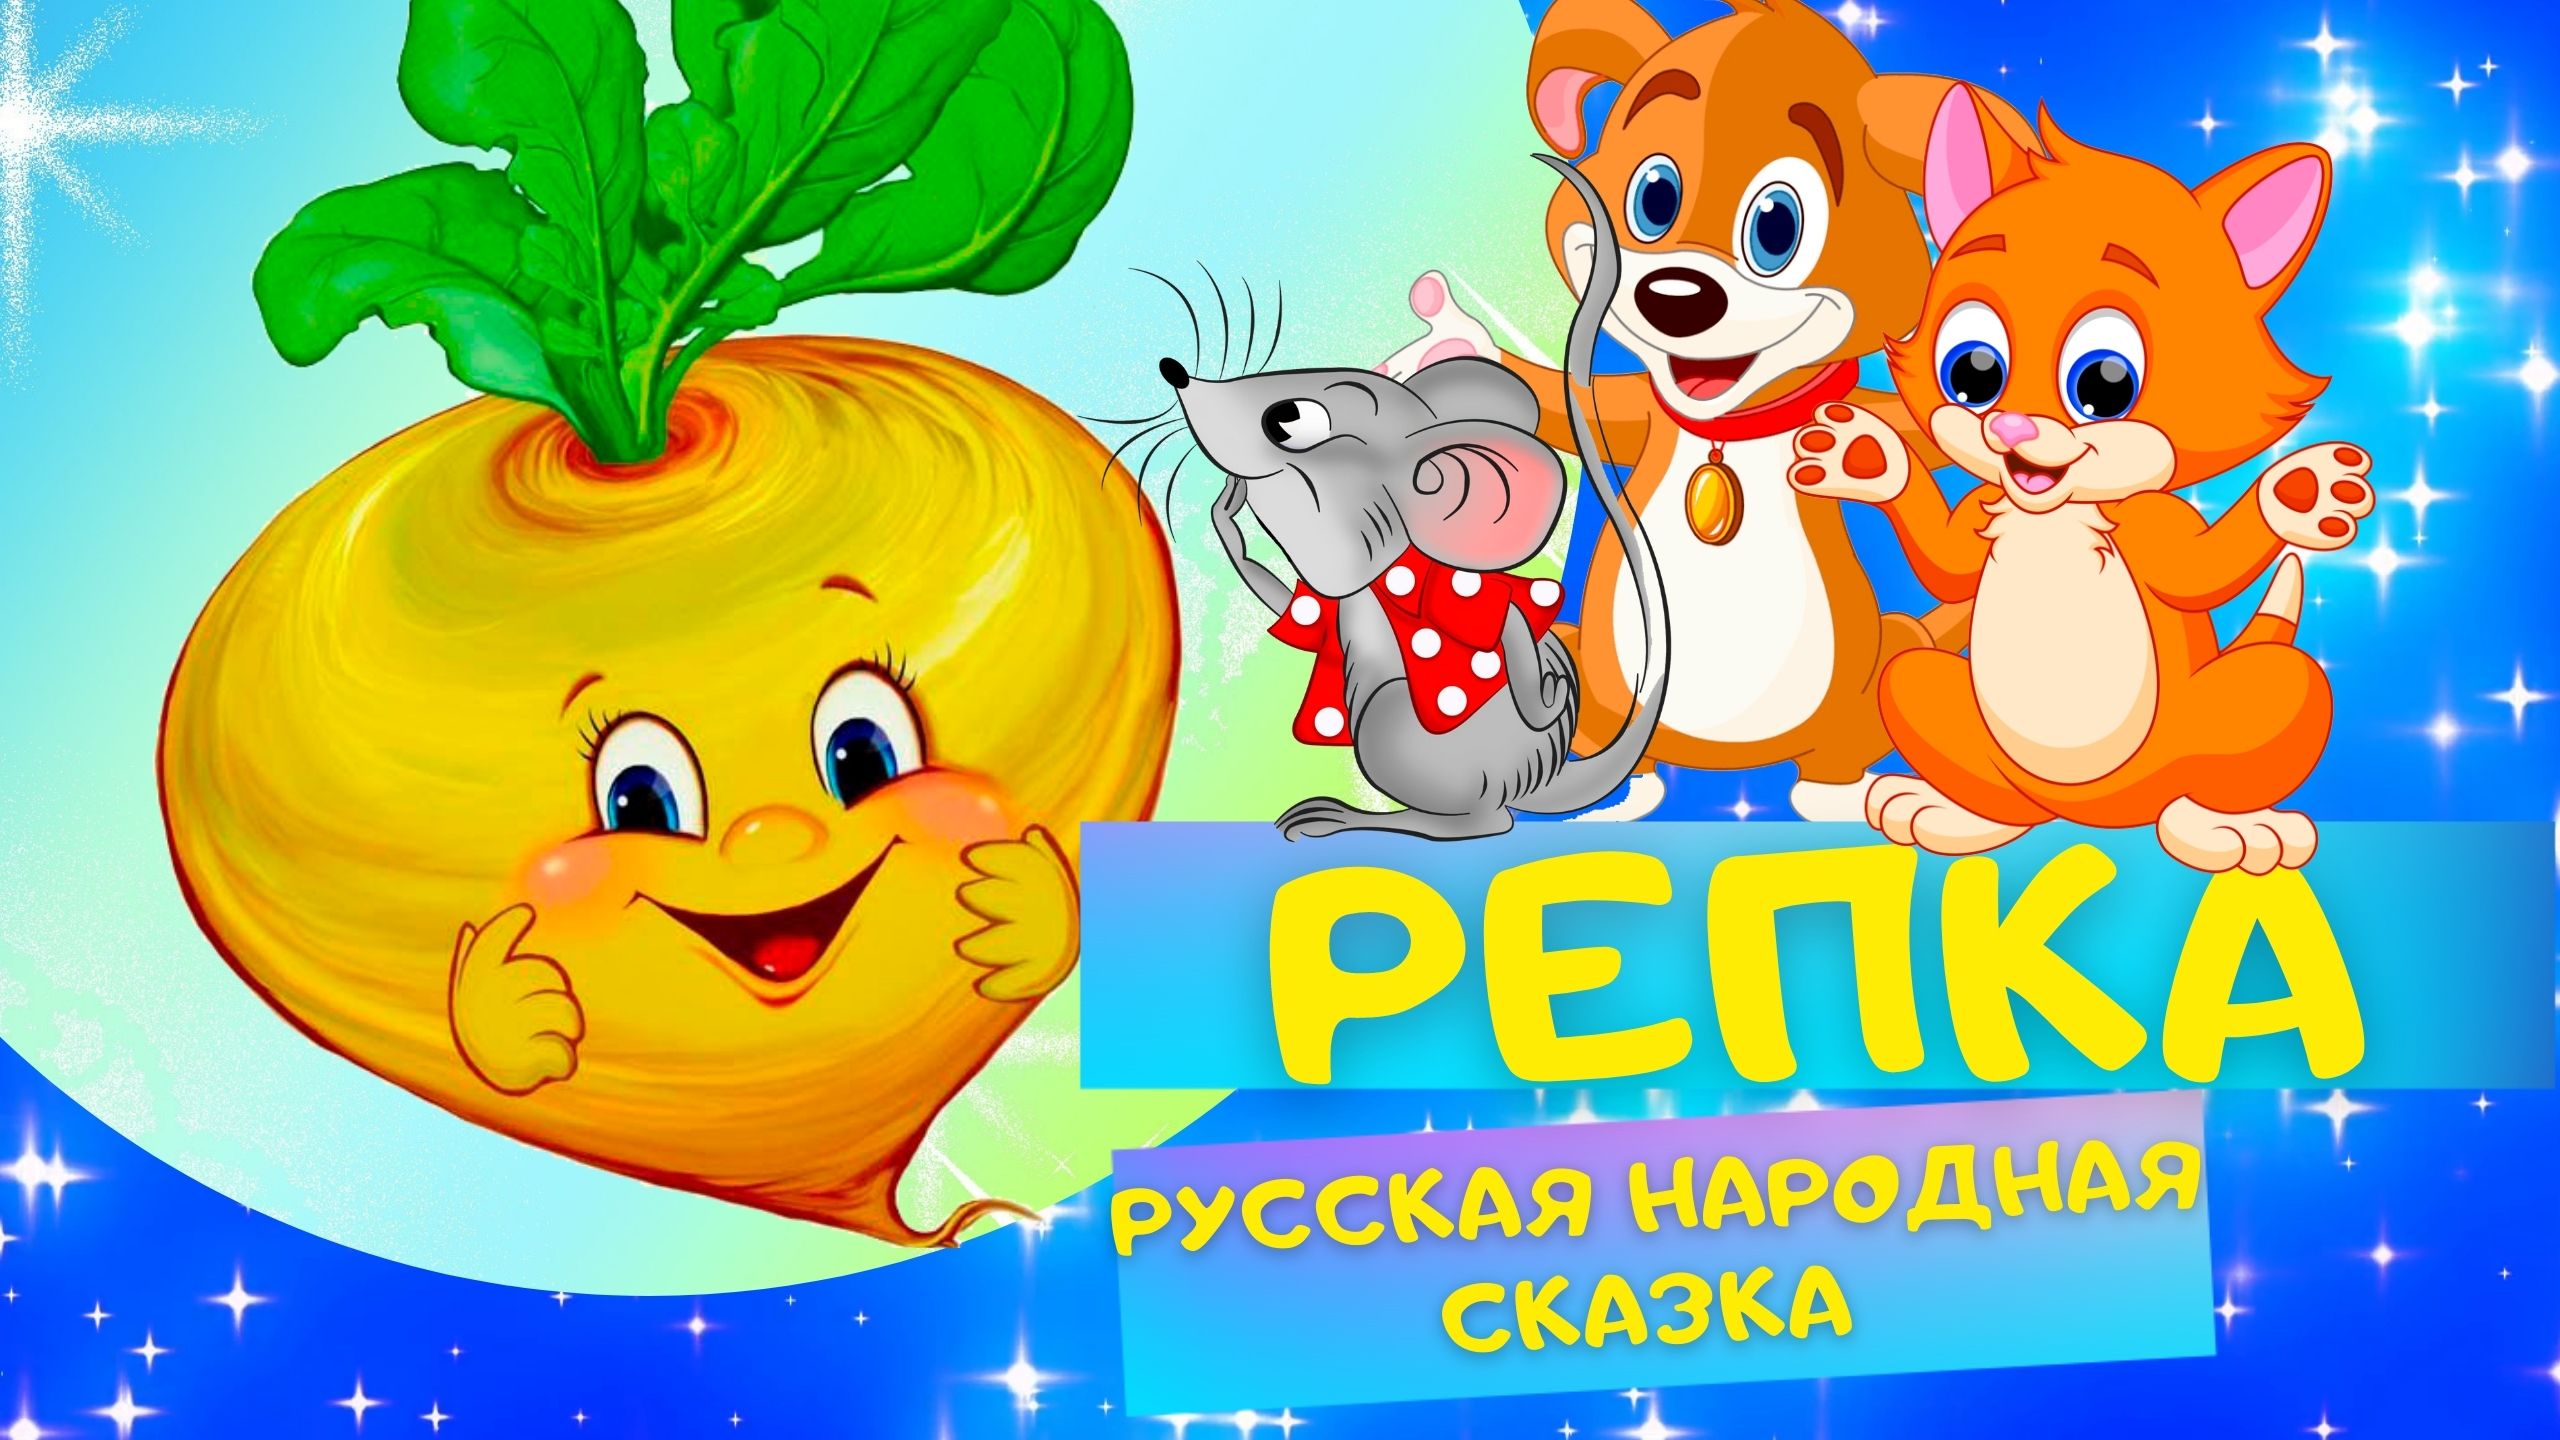 РЕПКА - Русская народная сказка. Слушать АУДИОСКАЗКУ для детей онлайн